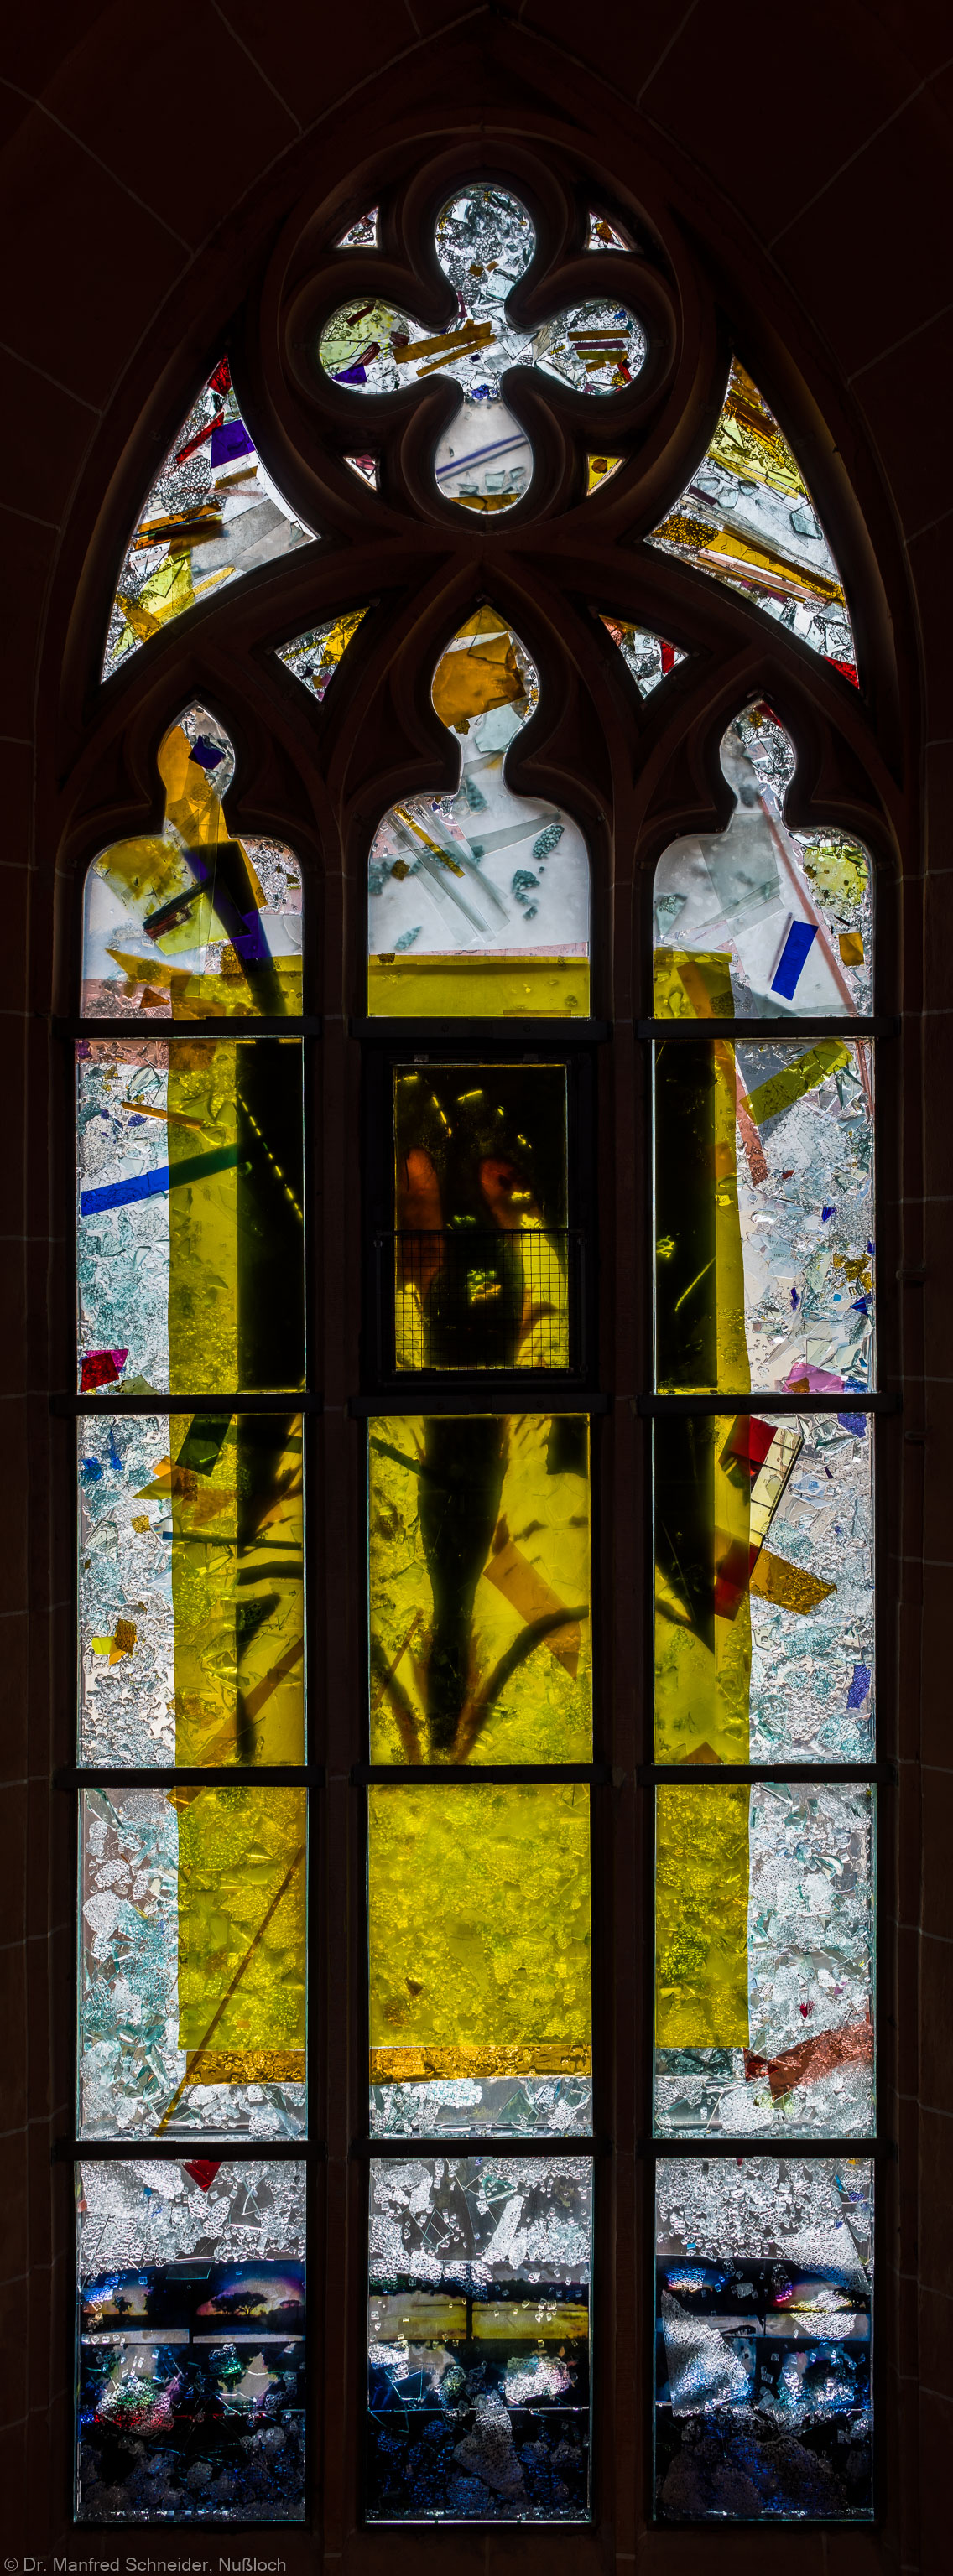 Heidelberg - Heiliggeistkirche - Nordschiff - 3. Joch, von Westen aus gezählt - Gesamtaufnahme des Fensters "Schöpfungsgeschichte - Gott sprach: es werde Licht" von Hella De Santarossa (aufgenommen im Oktober 2015, am frühen Nachmittag)